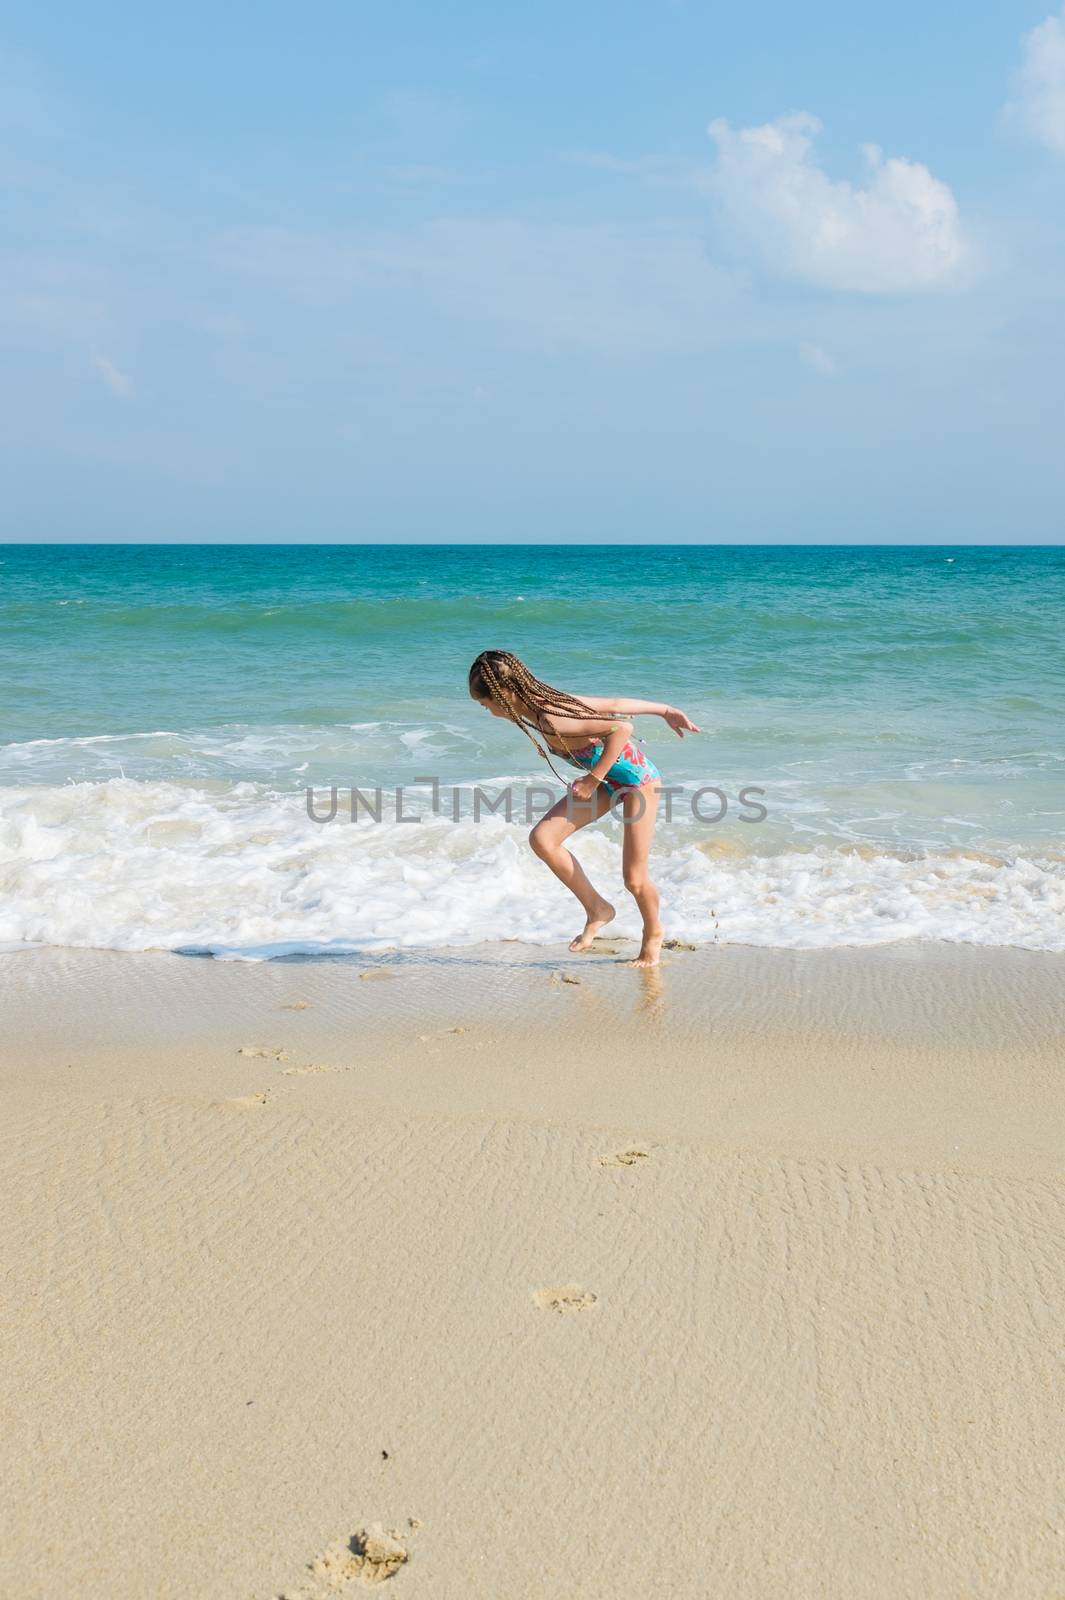 little girl on the sunny sea beach